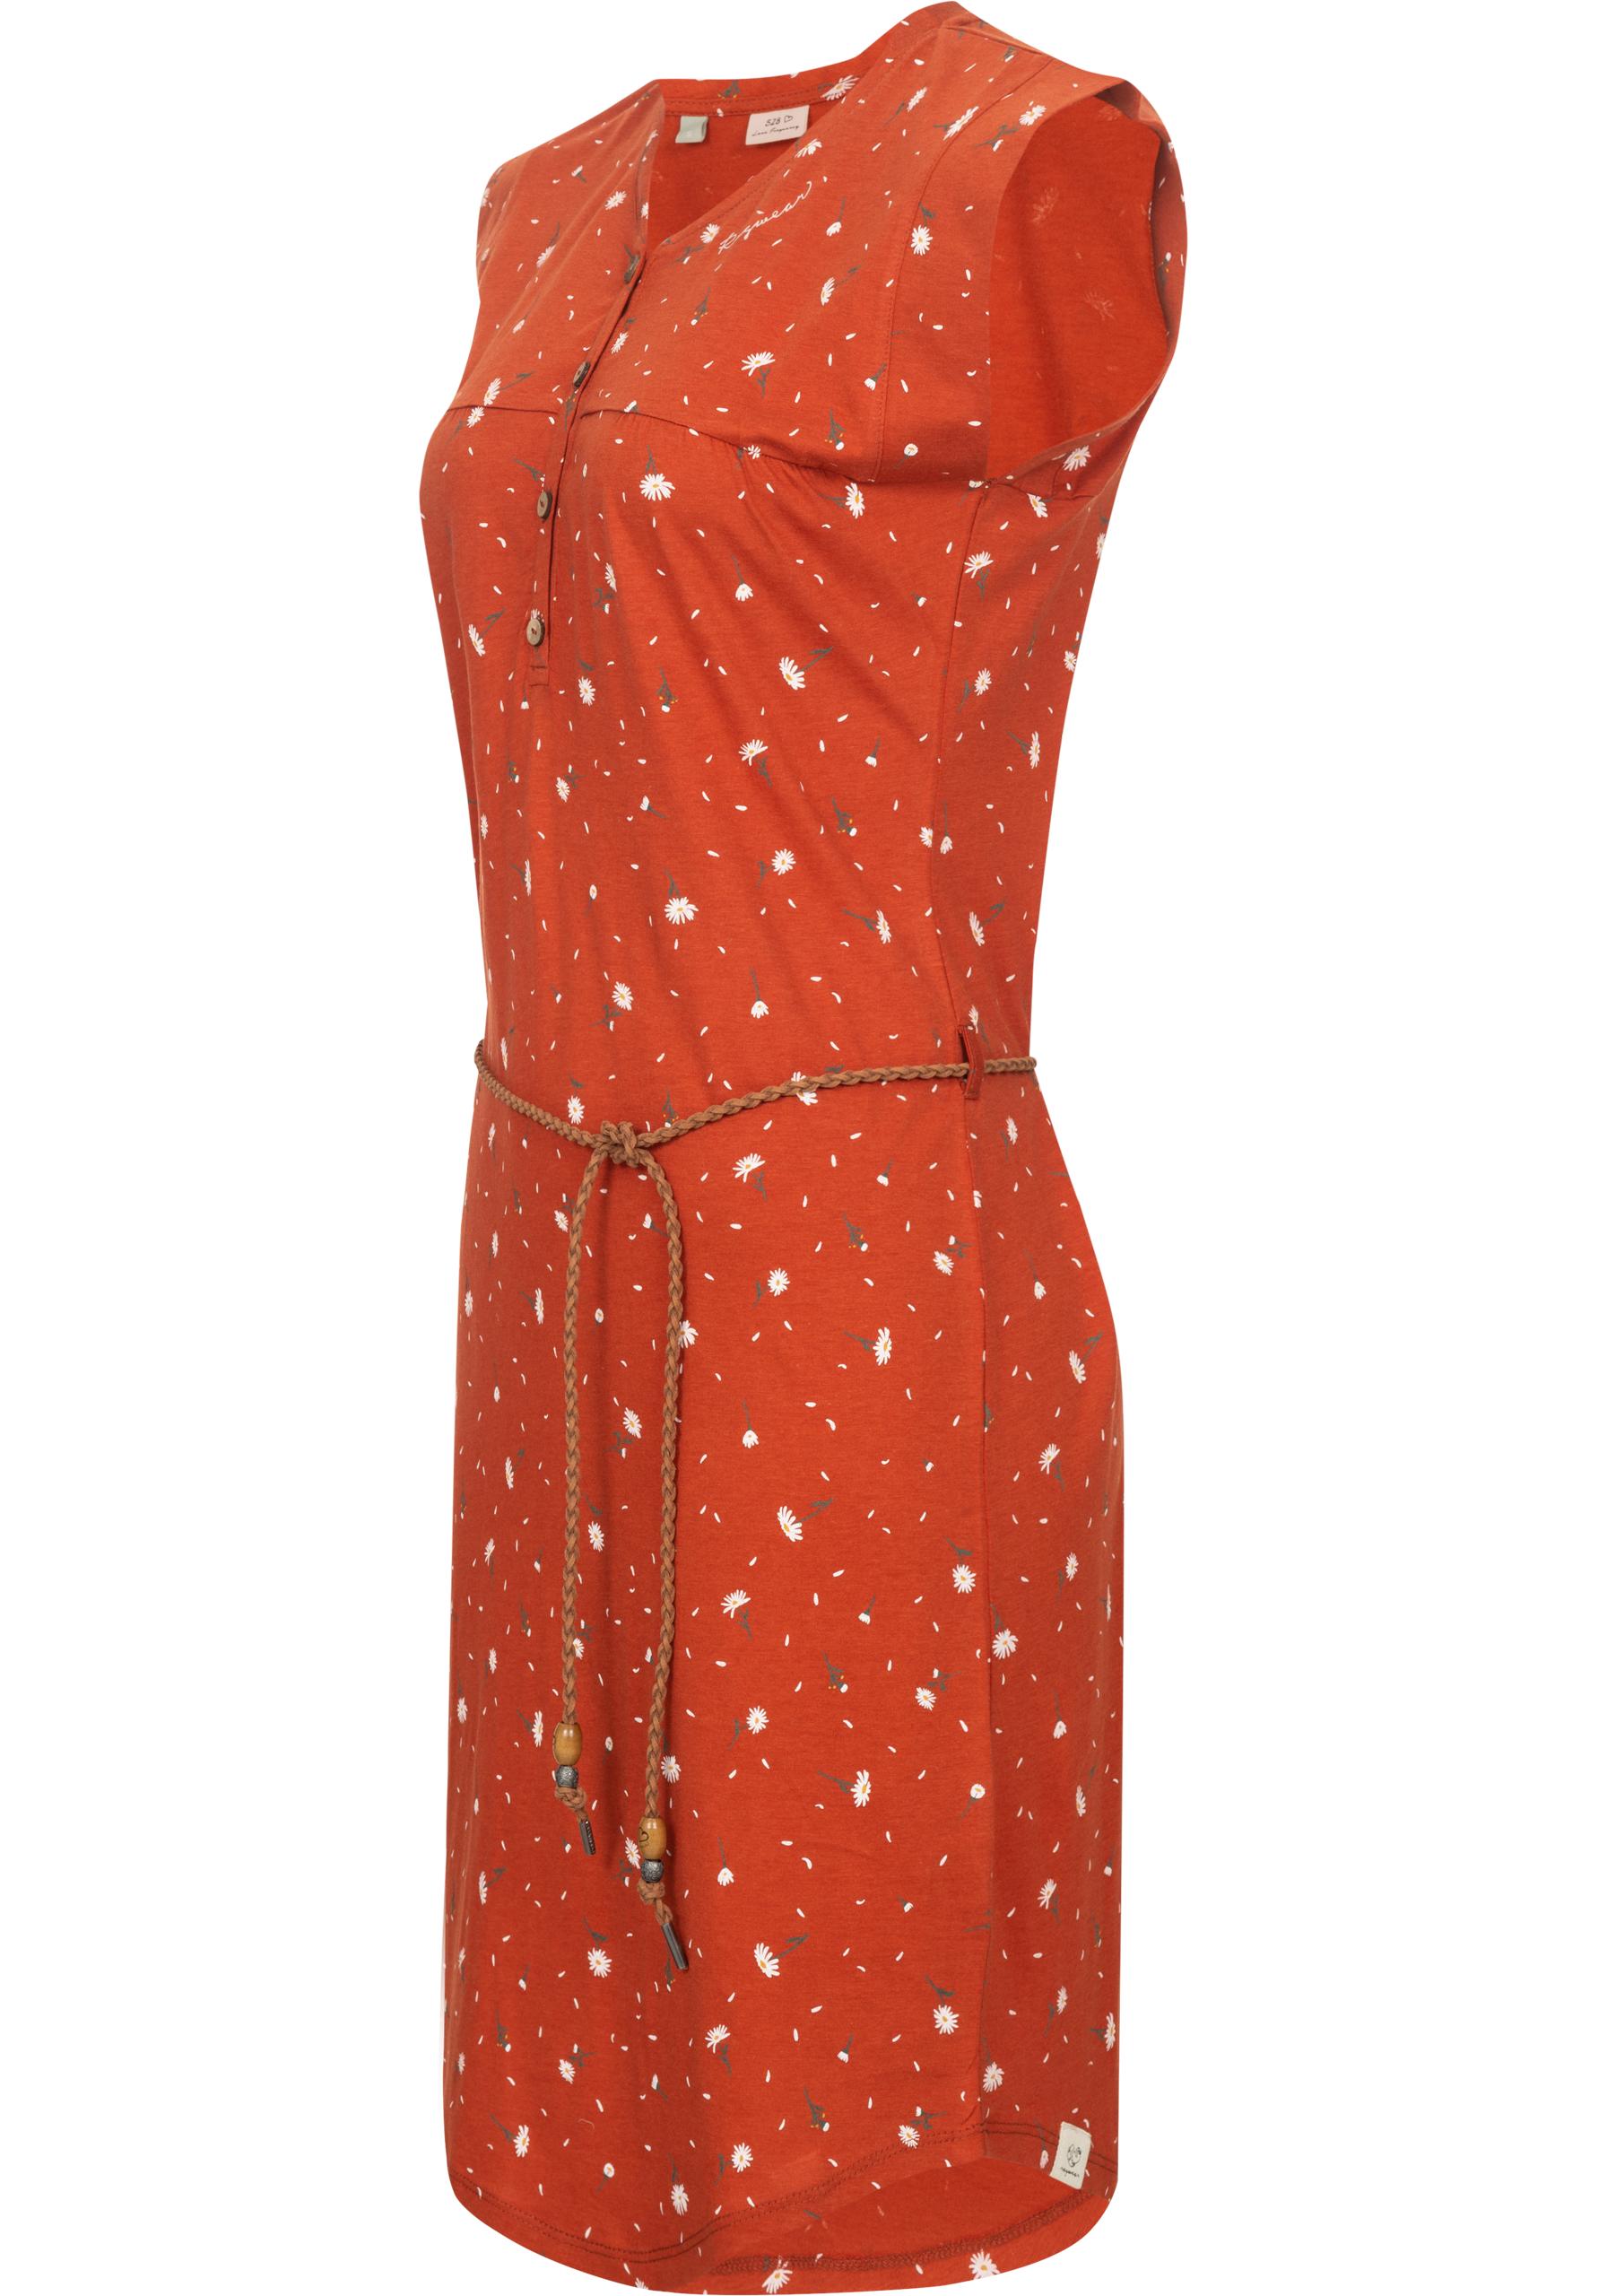 Ragwear Sommerkleid "Zofka Dress Organic", leichtes Jersey Kleid mit sommer günstig online kaufen